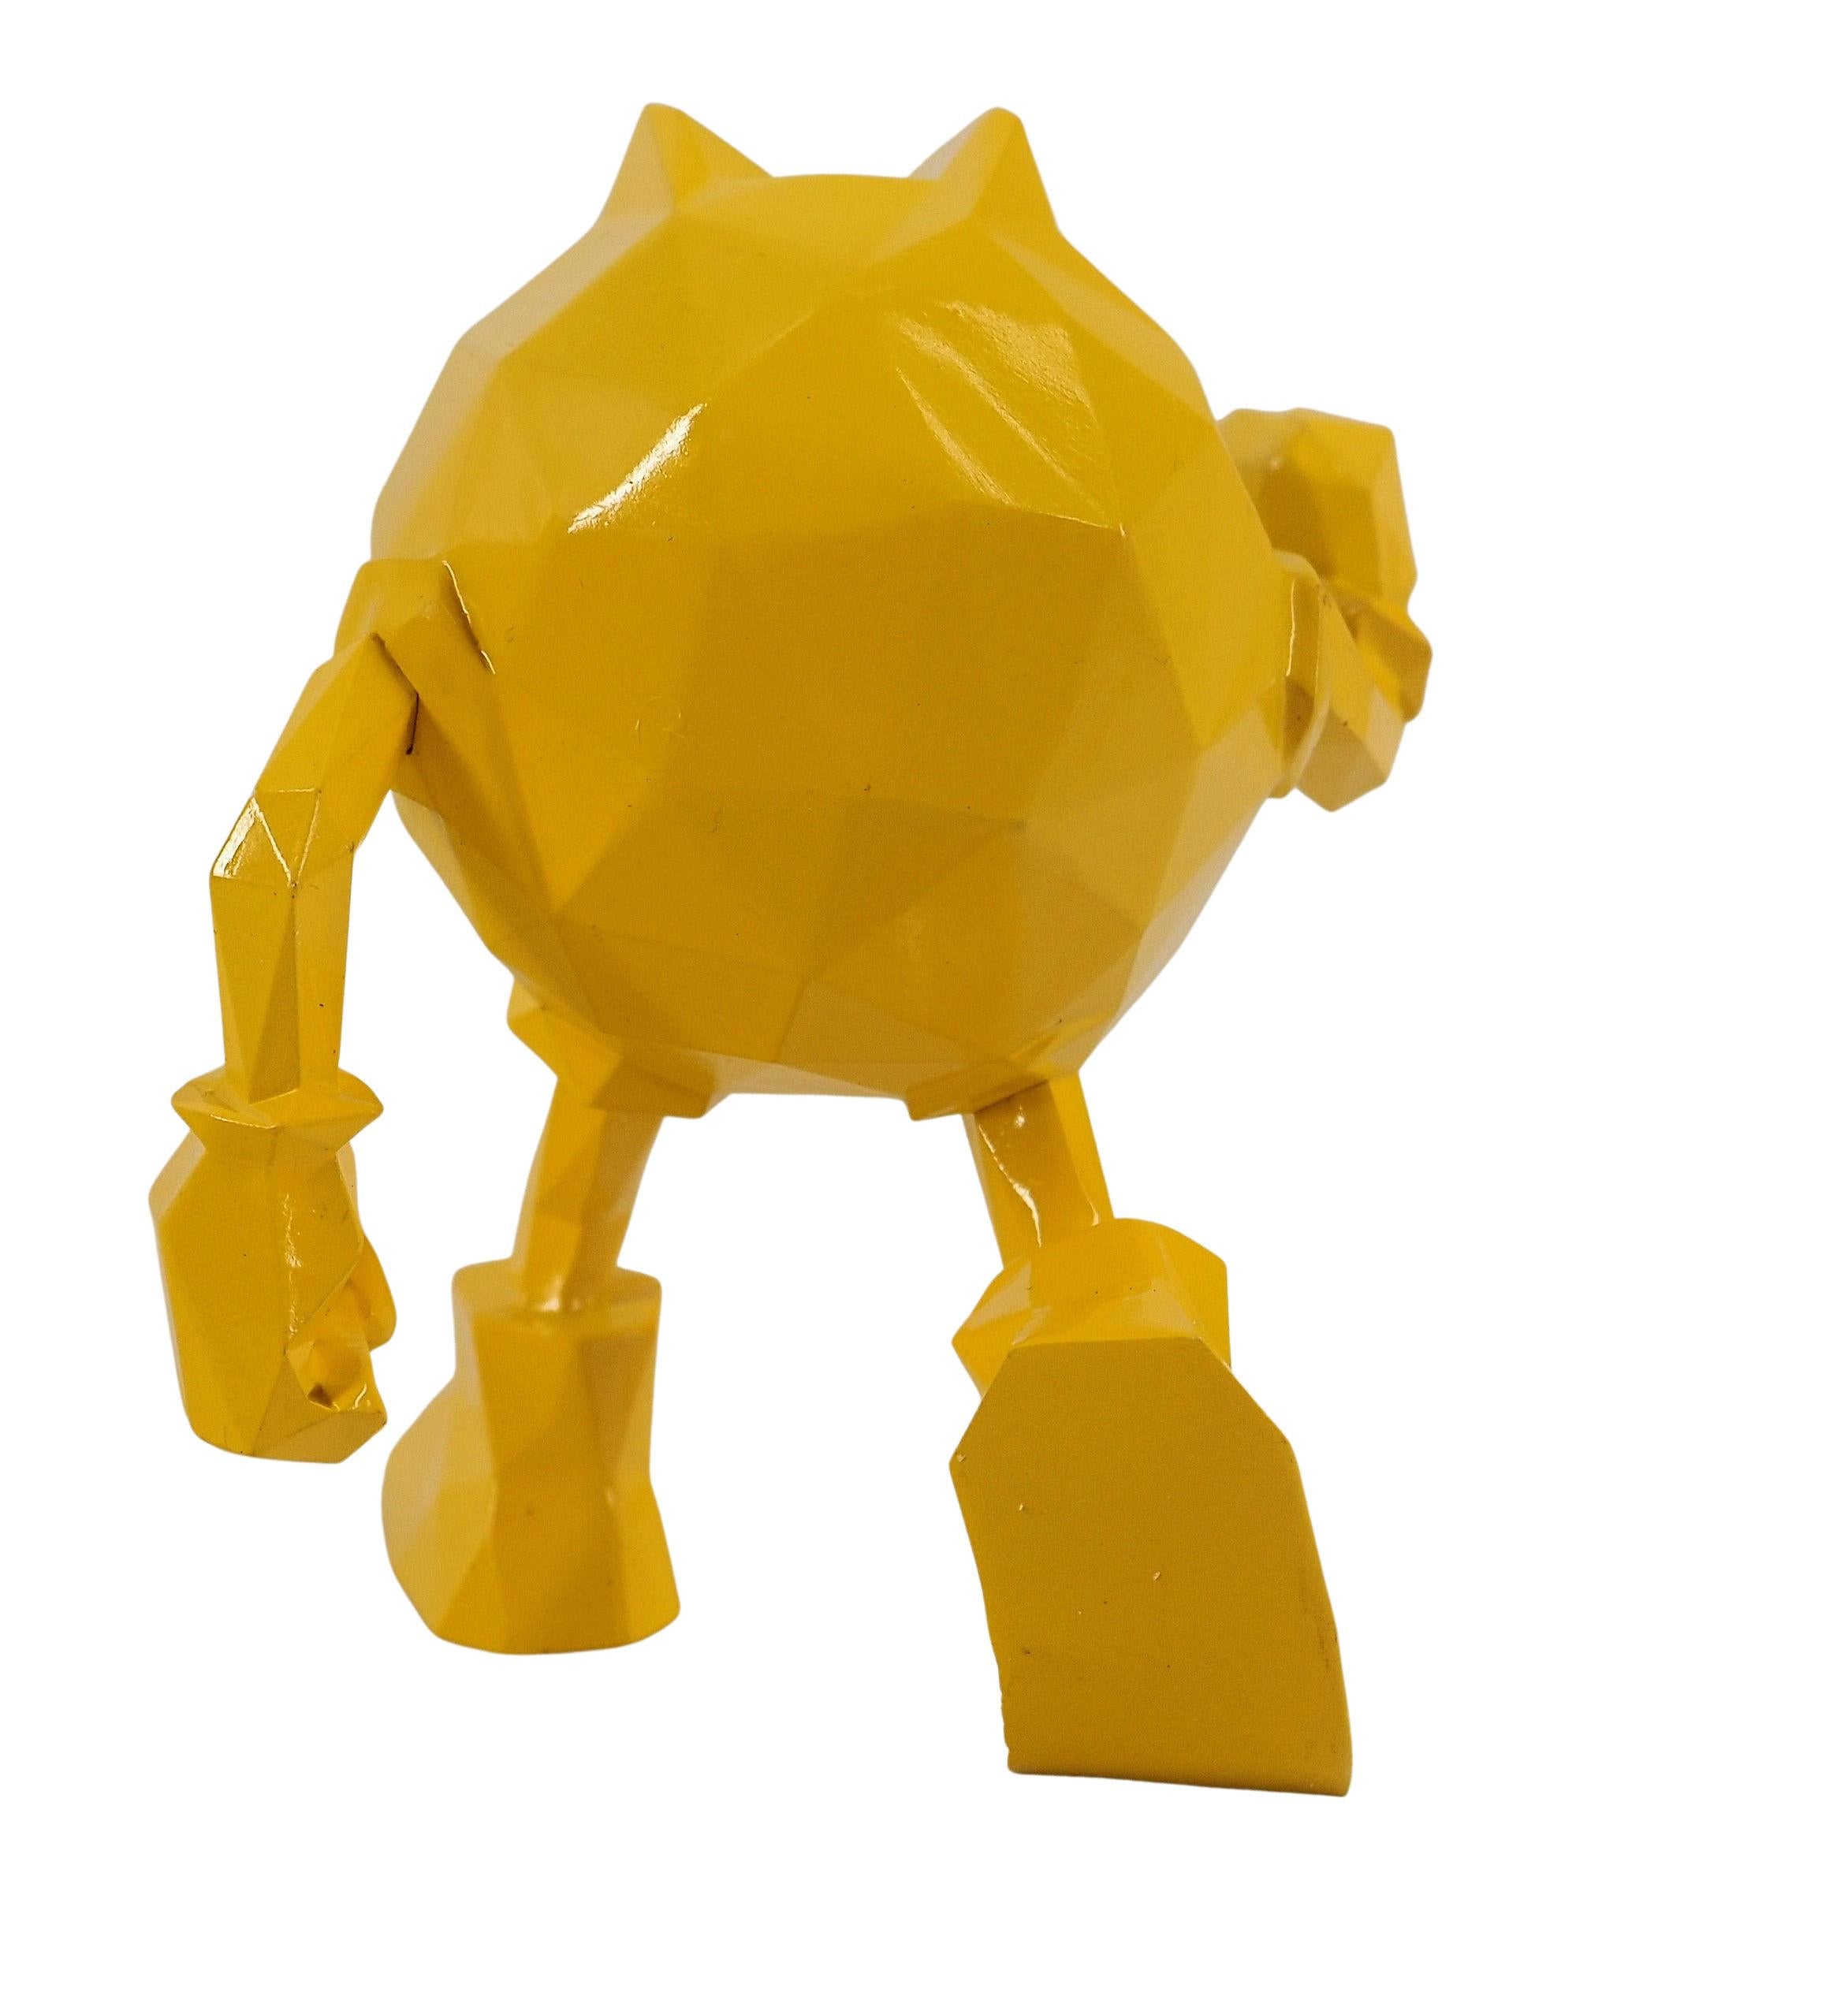 Richard ORLINSKI
Pac Man (édition jaune)

Sculpture en résine
Jaune Métallique
Environ 10 cm (c. 3.9 in)
Présenté dans sa boîte d'origine

Excellent état